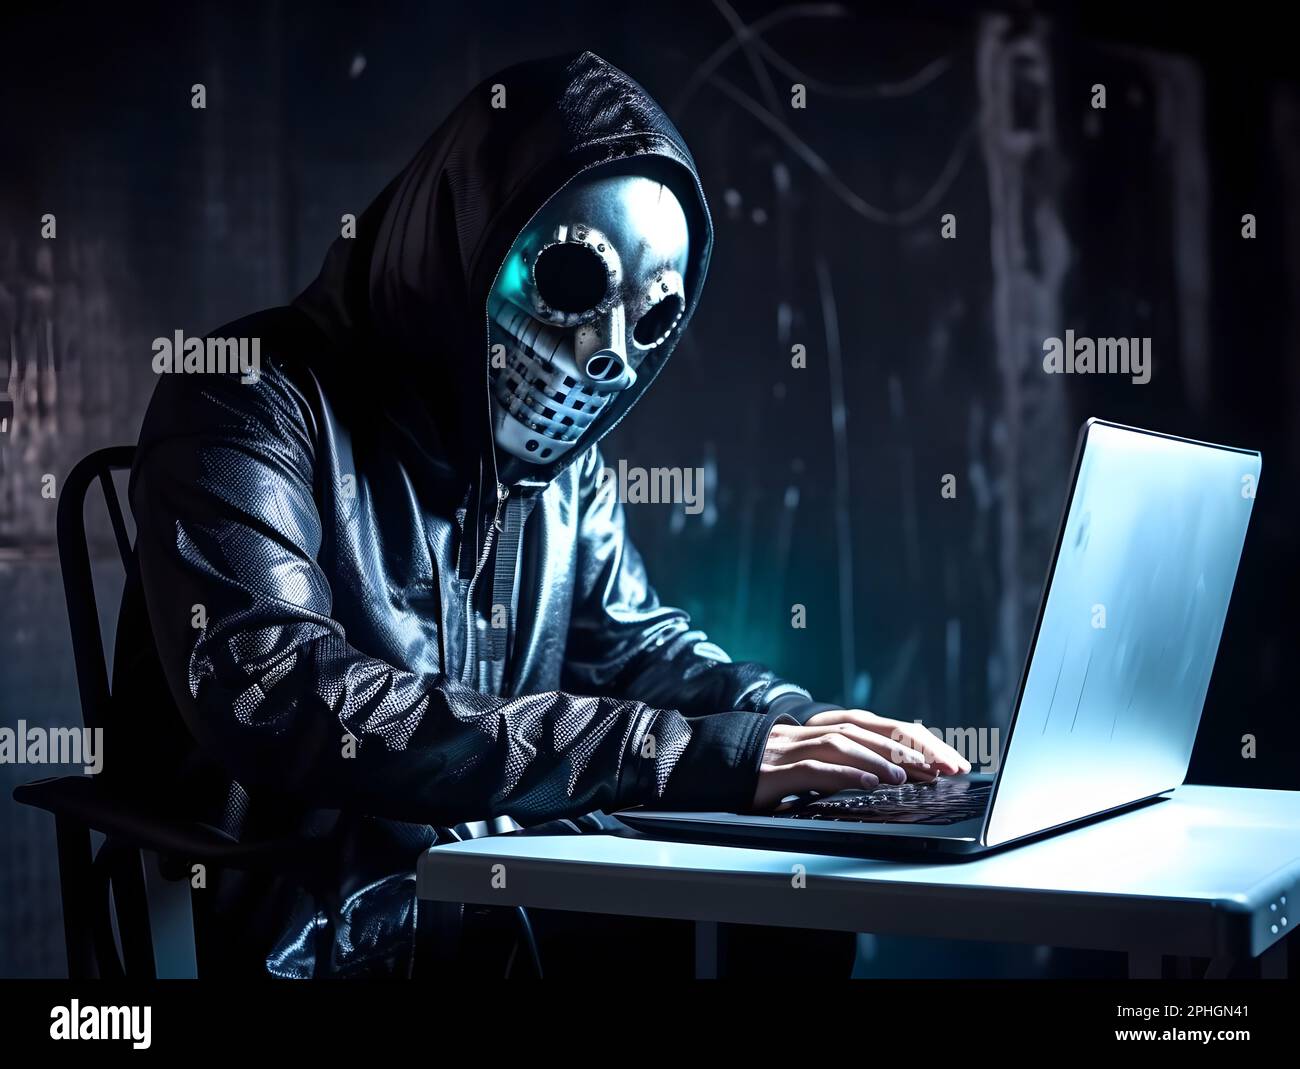 Hacker robot anónimo con sudadera con capucha. Concepto de hacking  ciberseguridad, cibercrimen, ciberataque, web oscura o web negra, etc  Fotografía de stock - Alamy